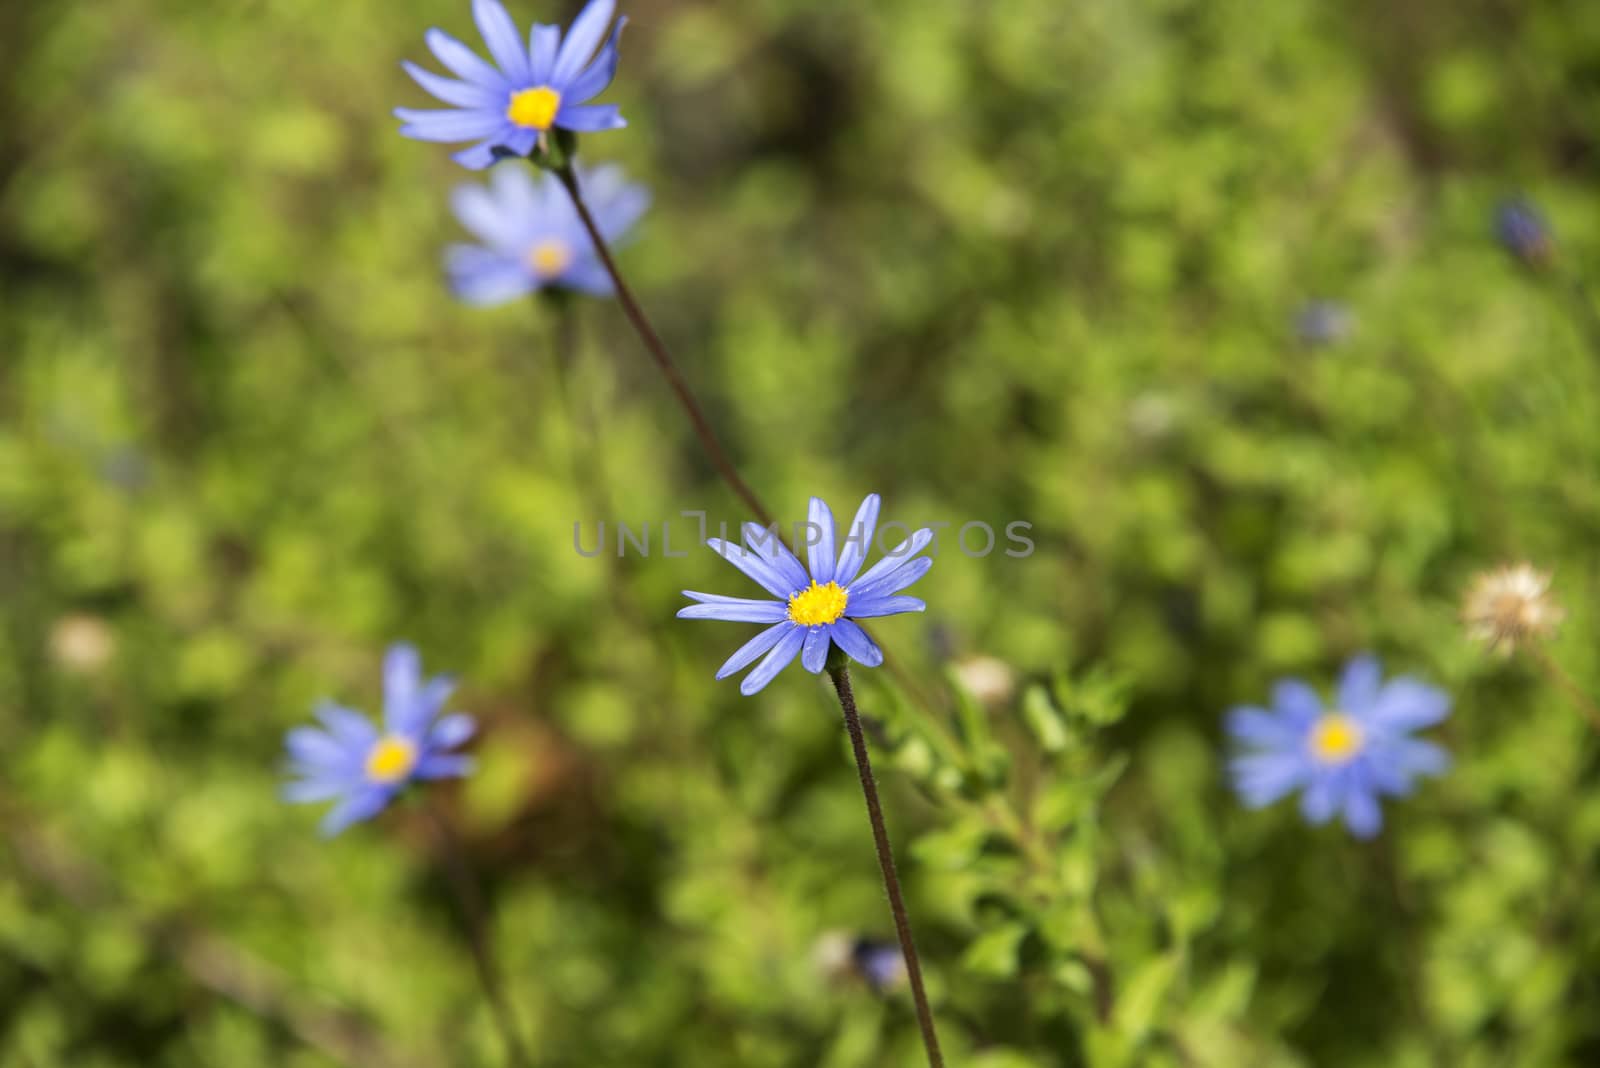 Blue daisies by Anna07